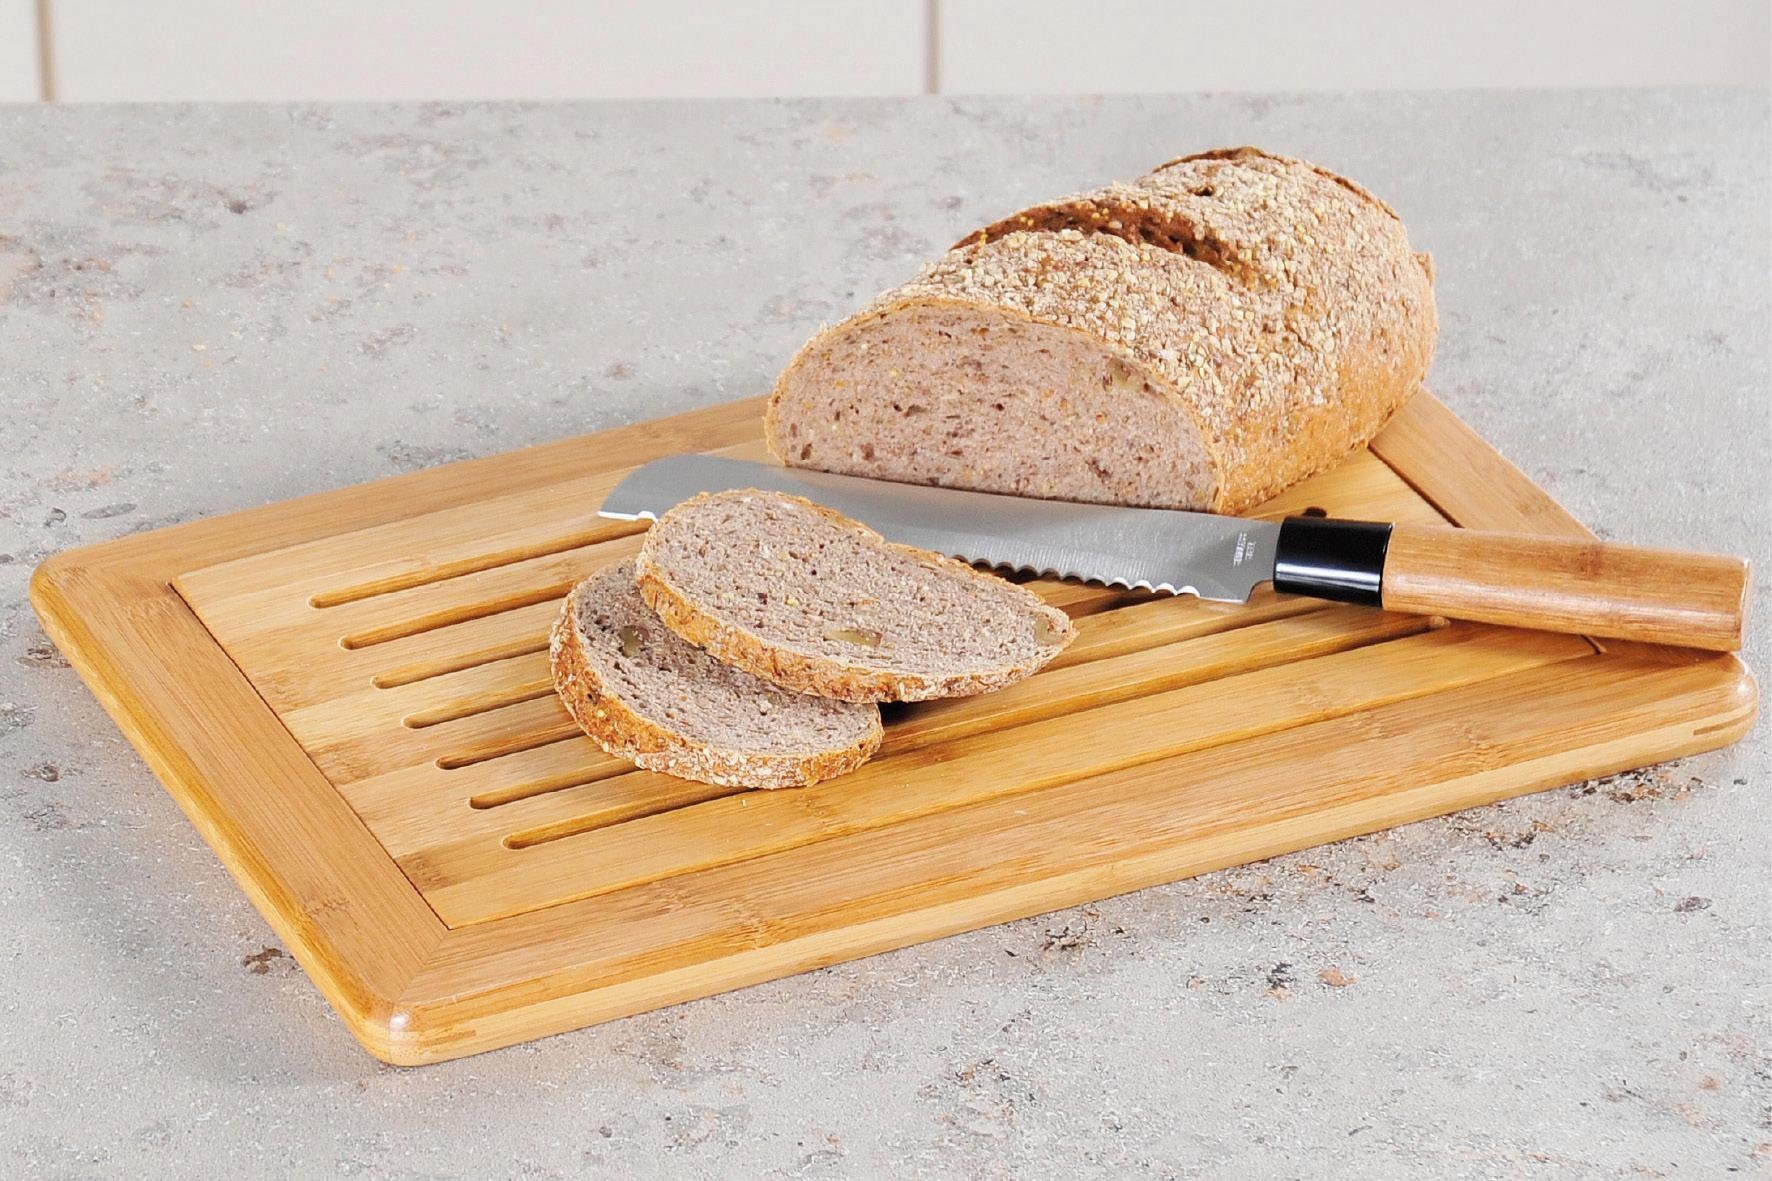 Krümelfach for für Bambus, mit Brot, KESPER & Schneidebrett, kitchen home